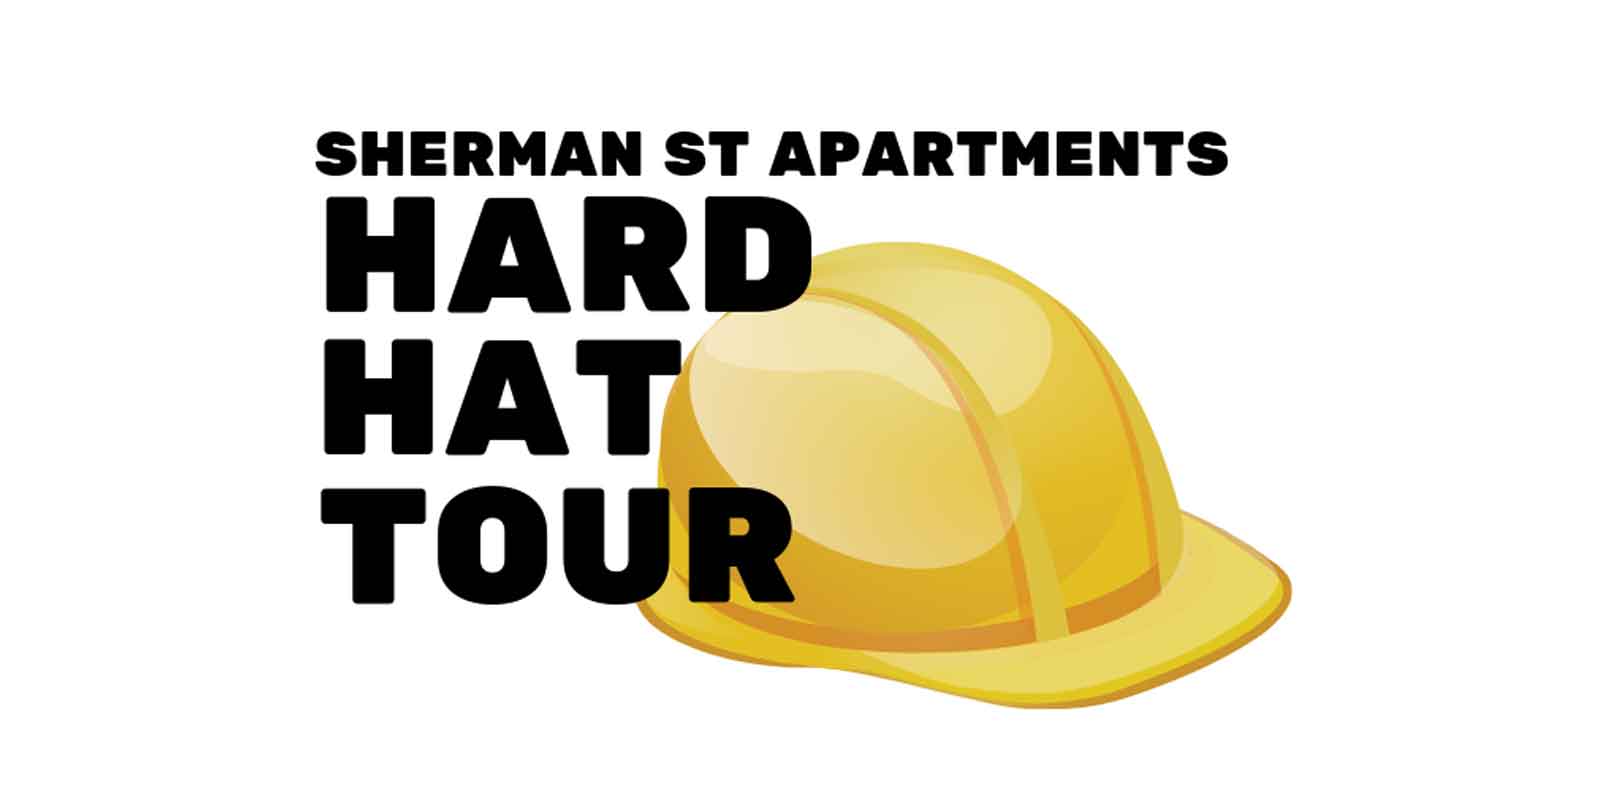 hard hat tour apartments